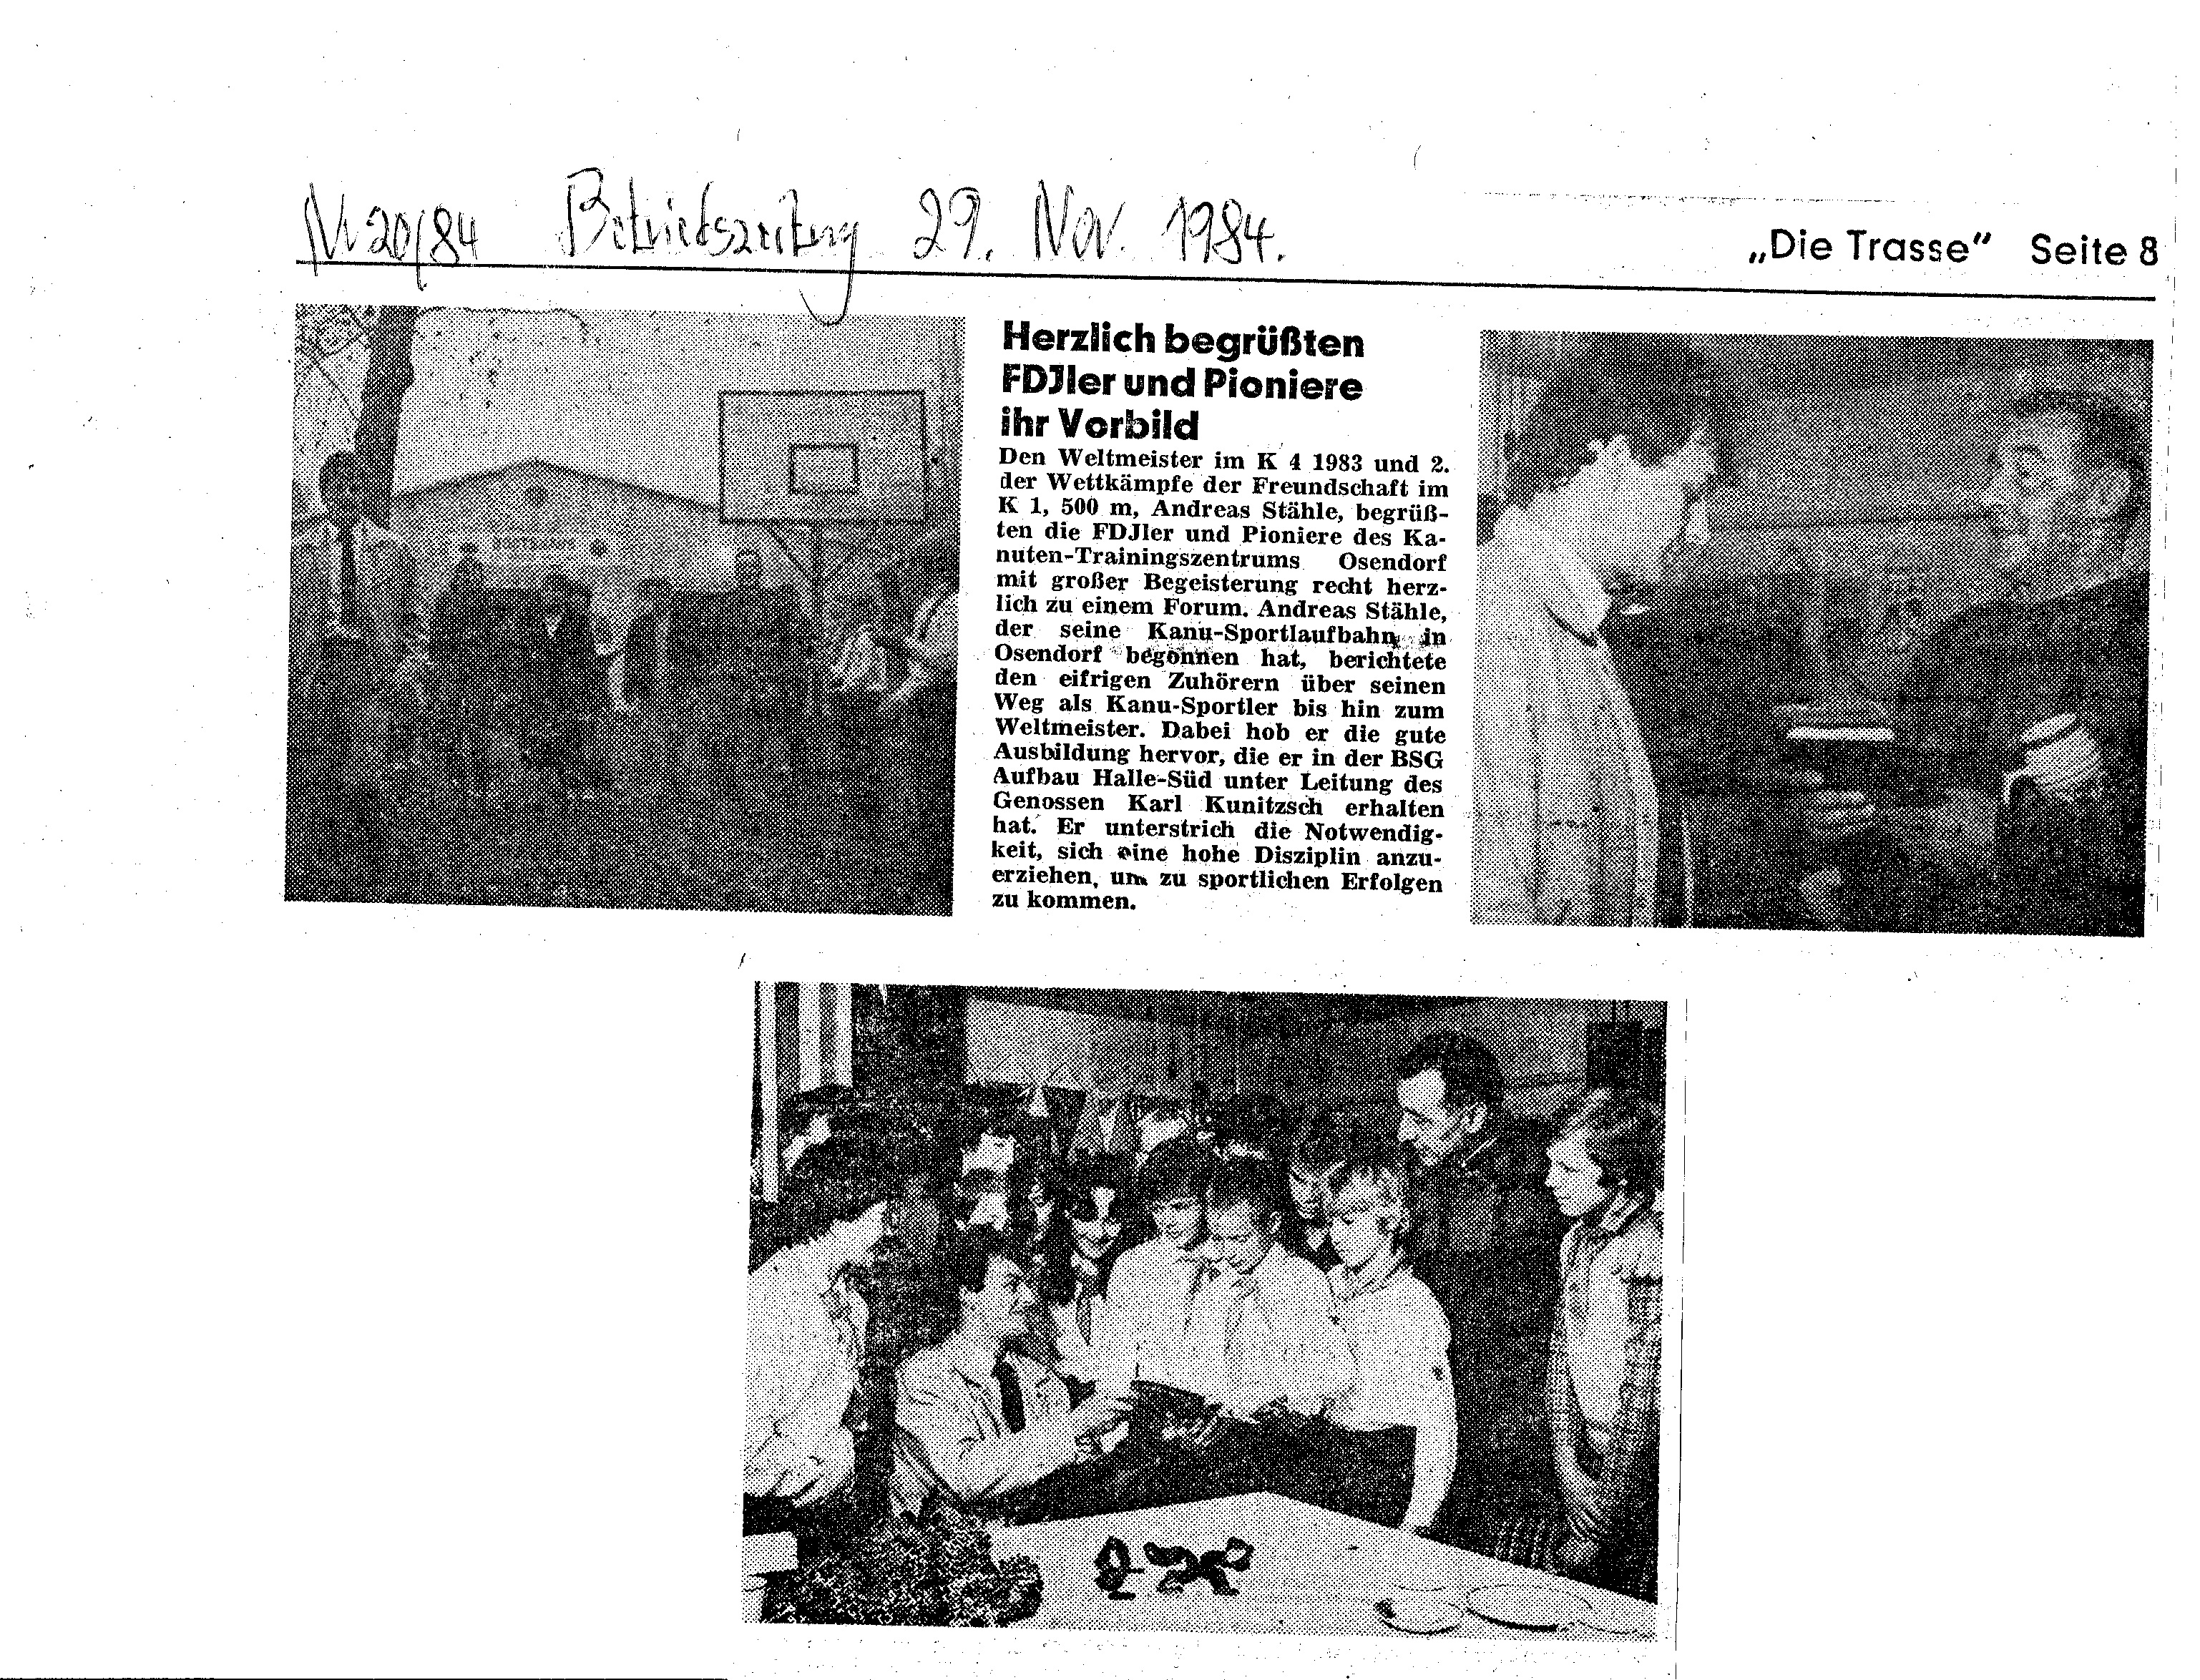 1984-11-29 Die Trasse- Herzlich begrüßten FDJler und Pioniere ihr Vorbild